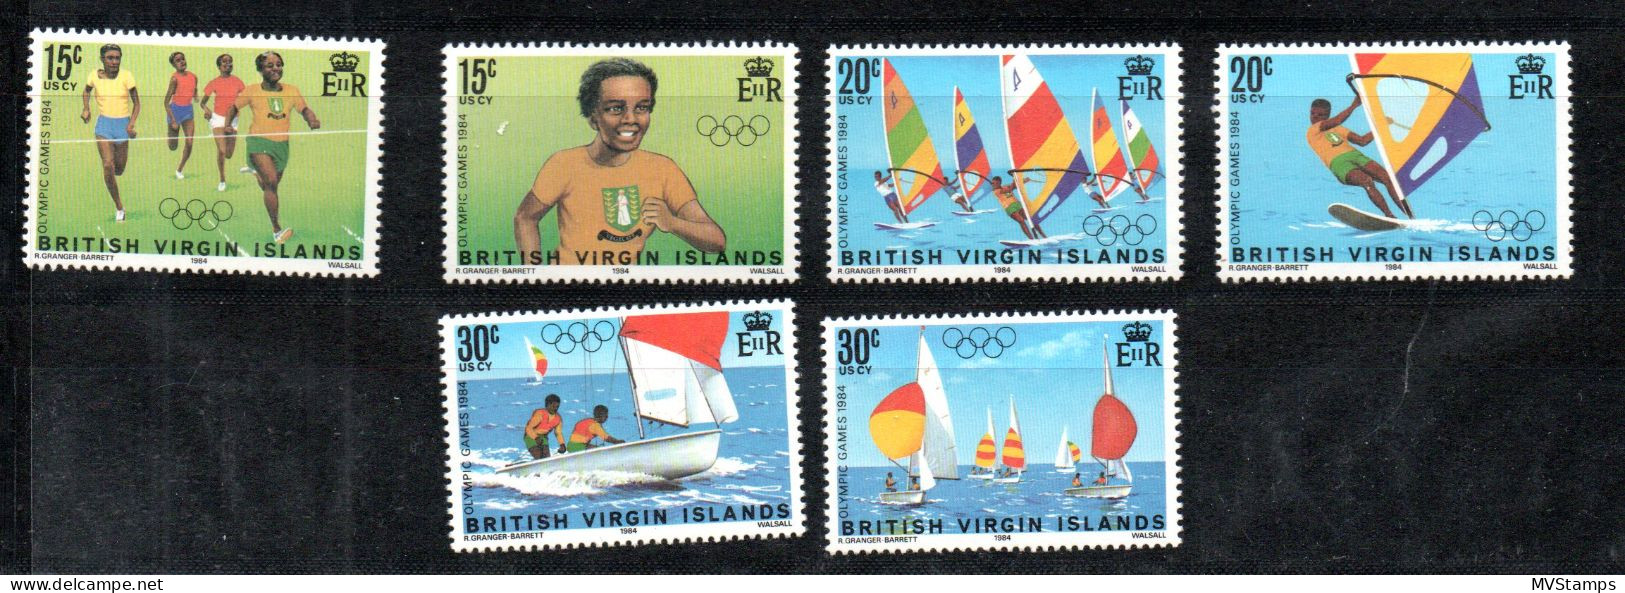 Virgin Islands 1984 Set Olympics Stamps (Michel 473/78) MNH - Iles Vièrges Britanniques